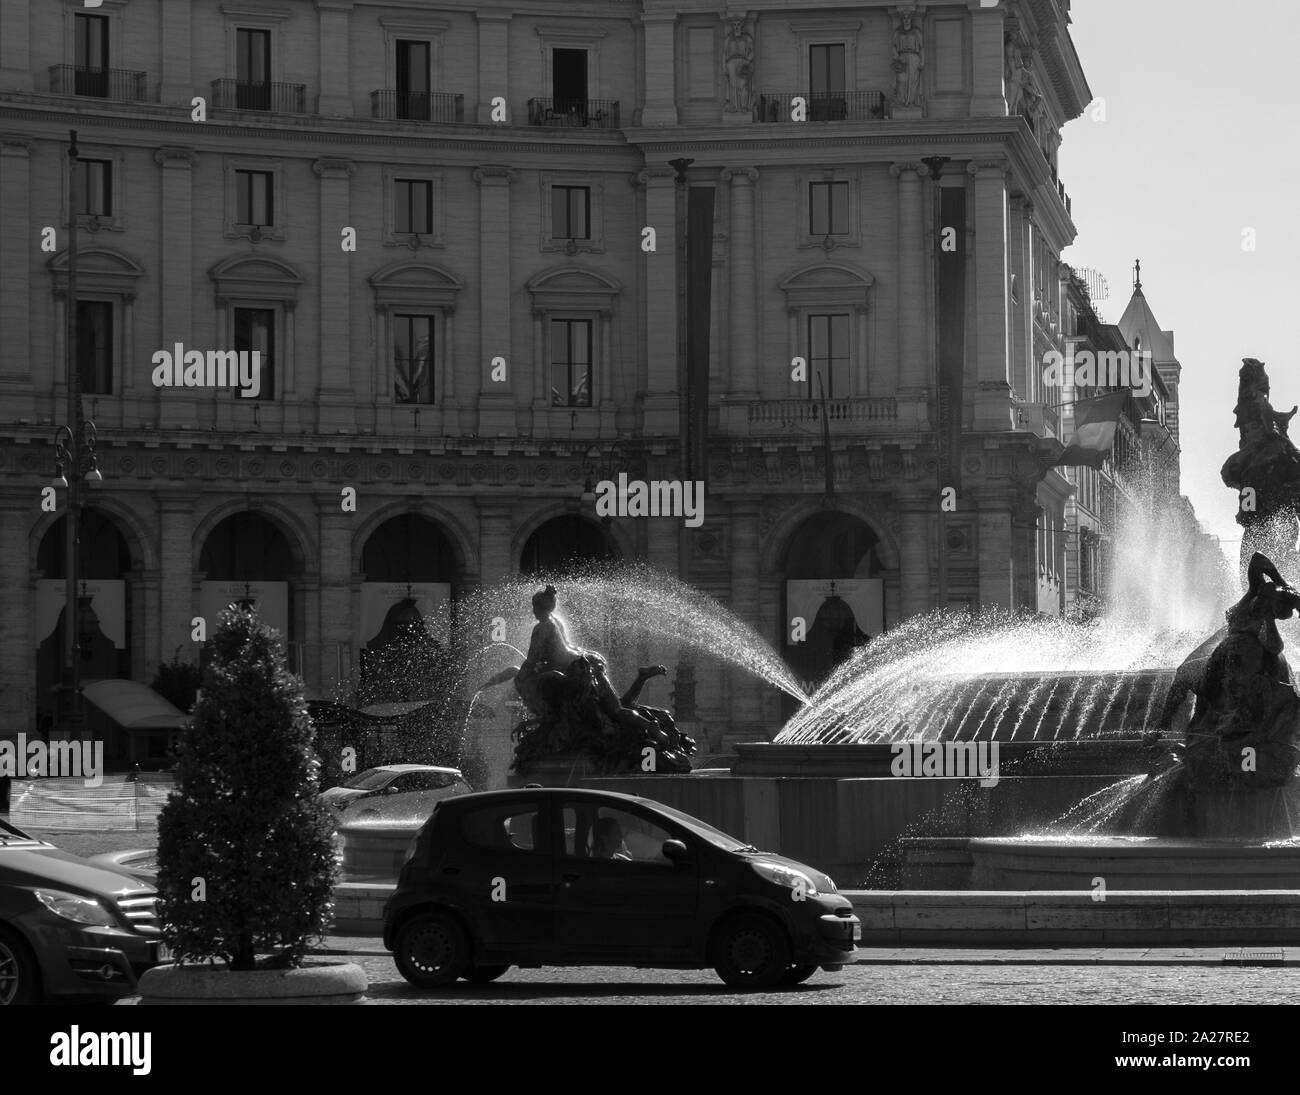 Hintergrundbeleuchtung schwarz-weiß Bild von Wasser Sprühen aus der Brunnen im Zentrum der Pizza Della Republica, Rom, street scene. Stockfoto